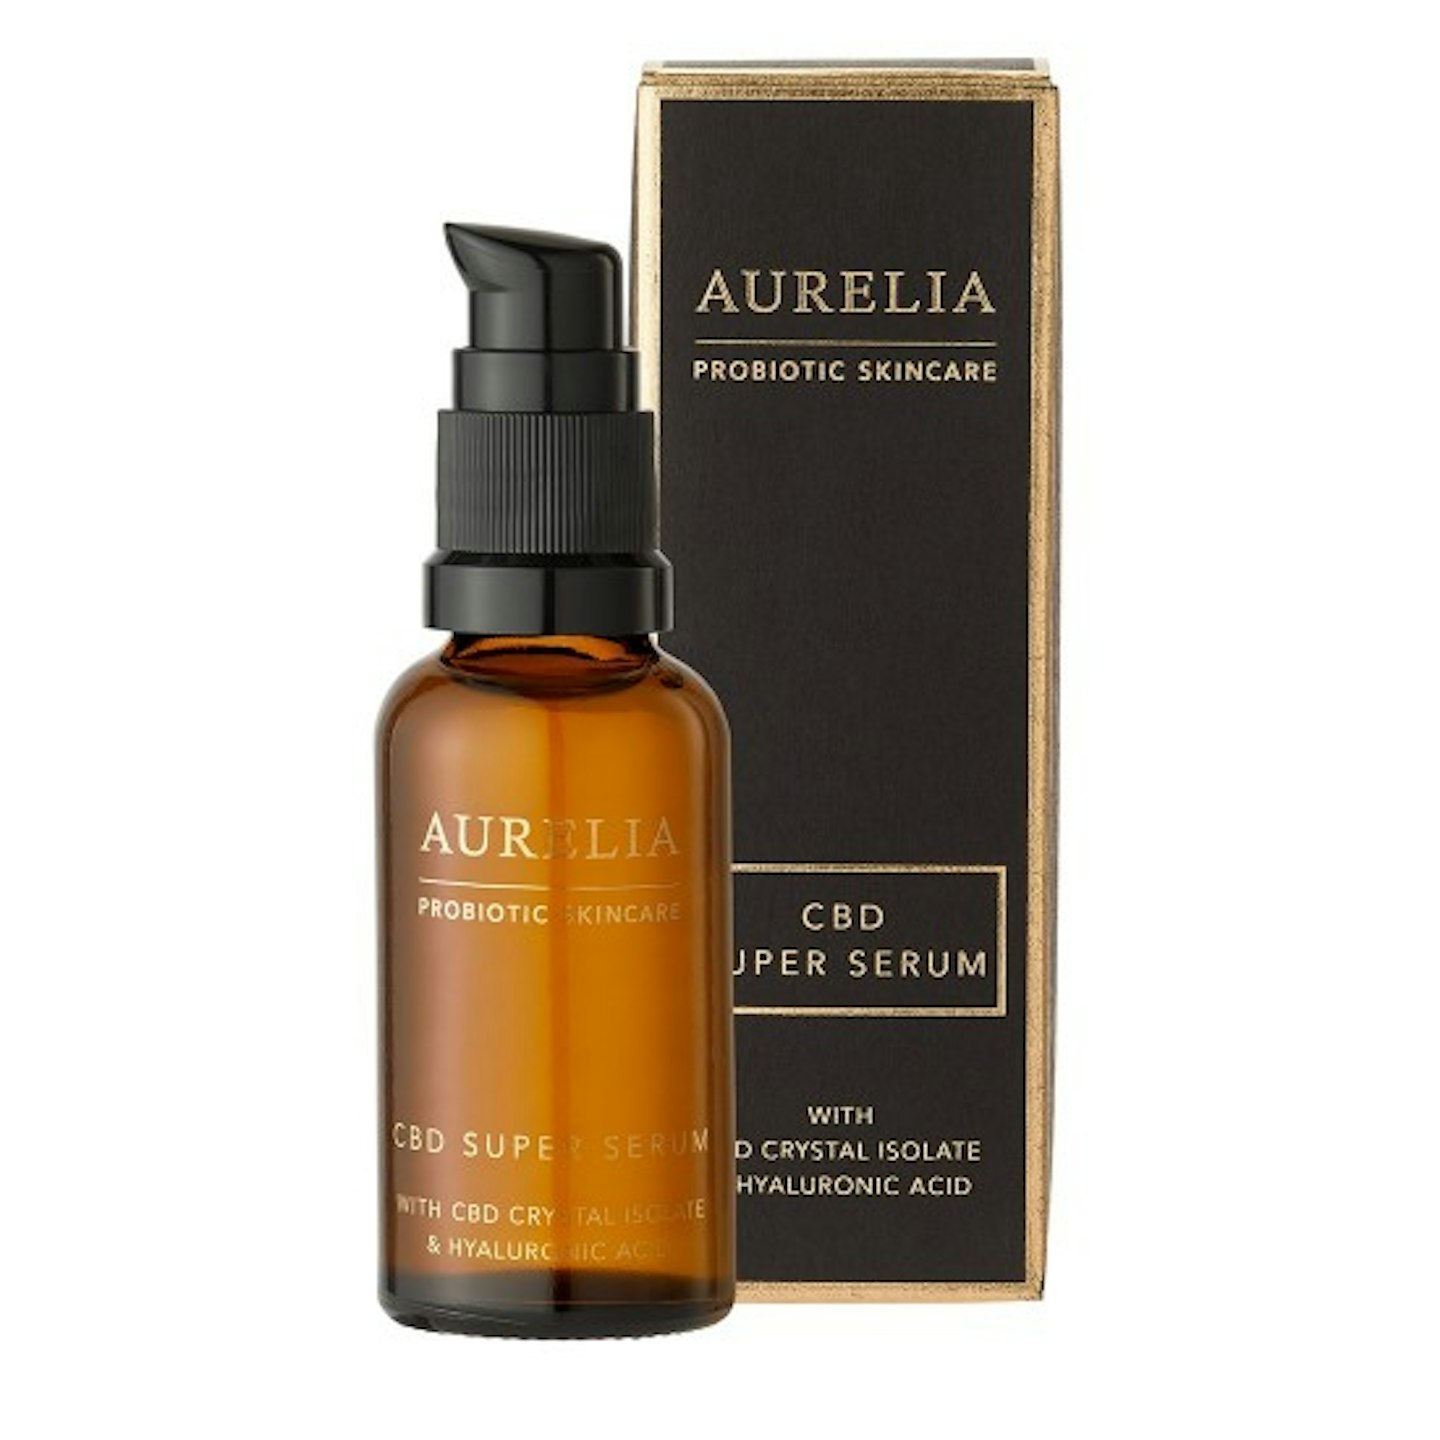 Aurelia Probiotic Skincare CBD Super Serum, £64